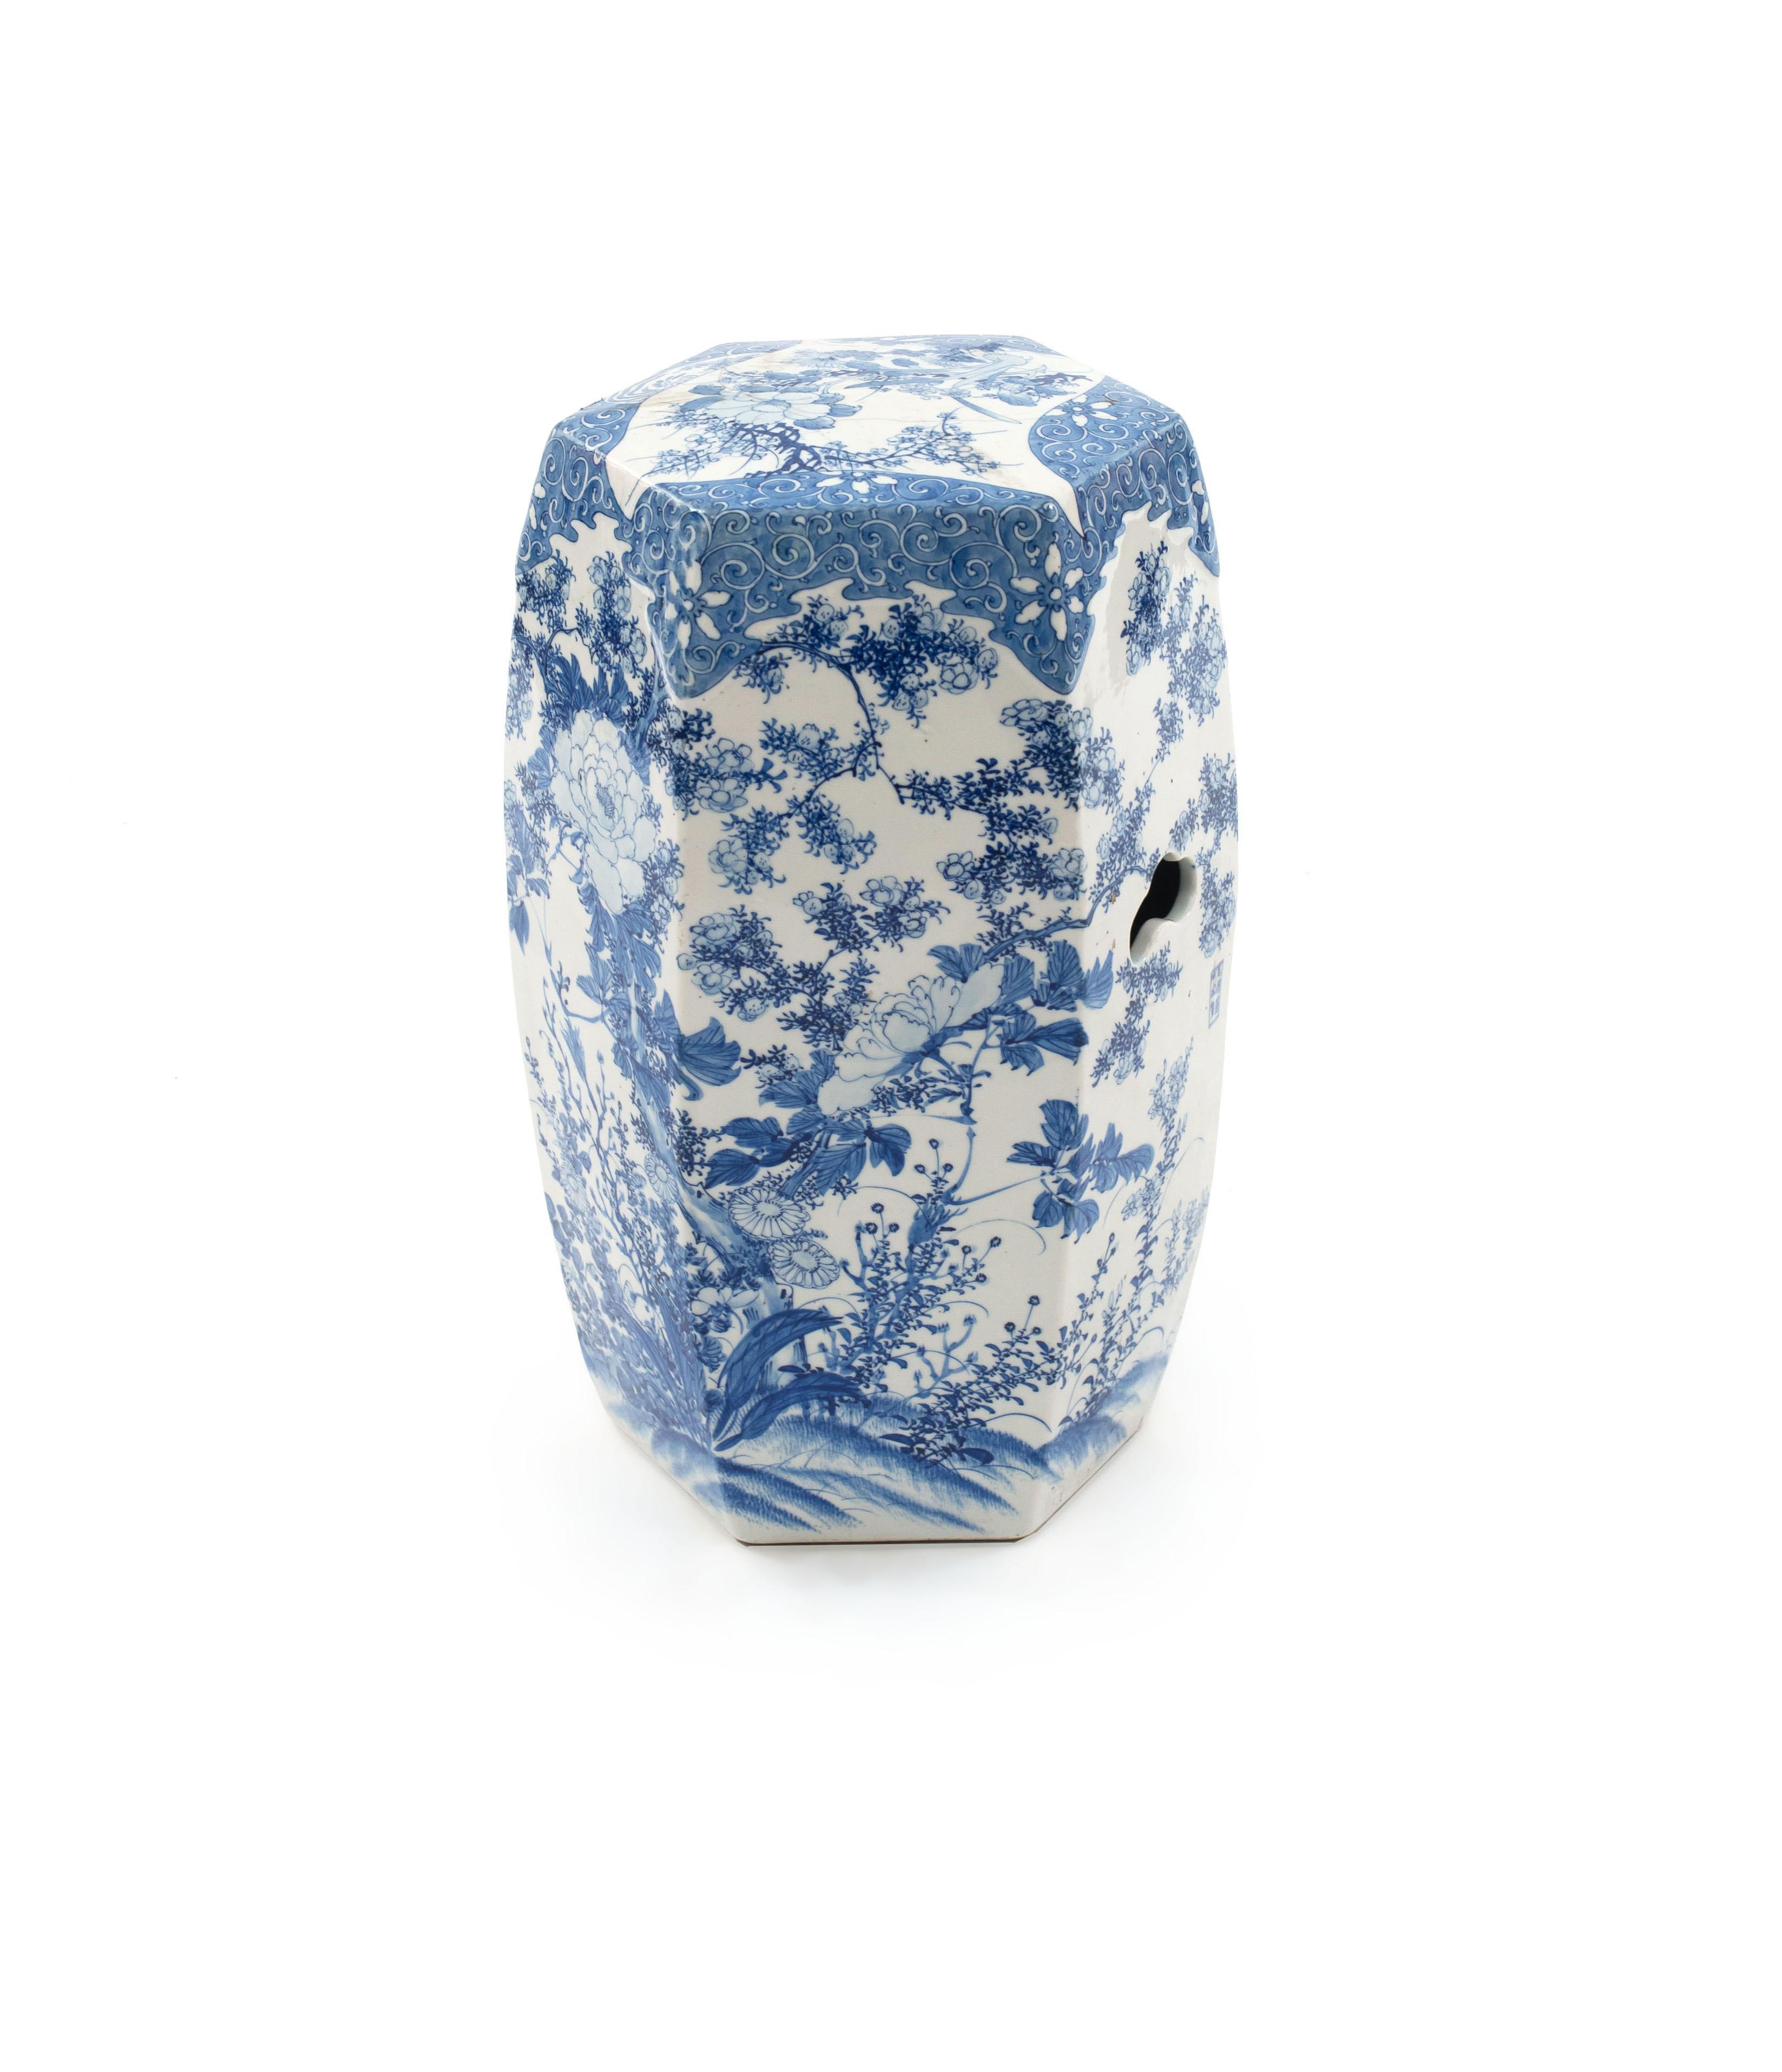 Asiatisch-chinesischer Gartenstuhl aus blau-weiß glasiertem Porzellan mit sechseckigem Querschnitt, verziert mit Pfingstrosen und blühenden Ranken (19./20. Jh.) (ähnlich Inv. #014642A)
